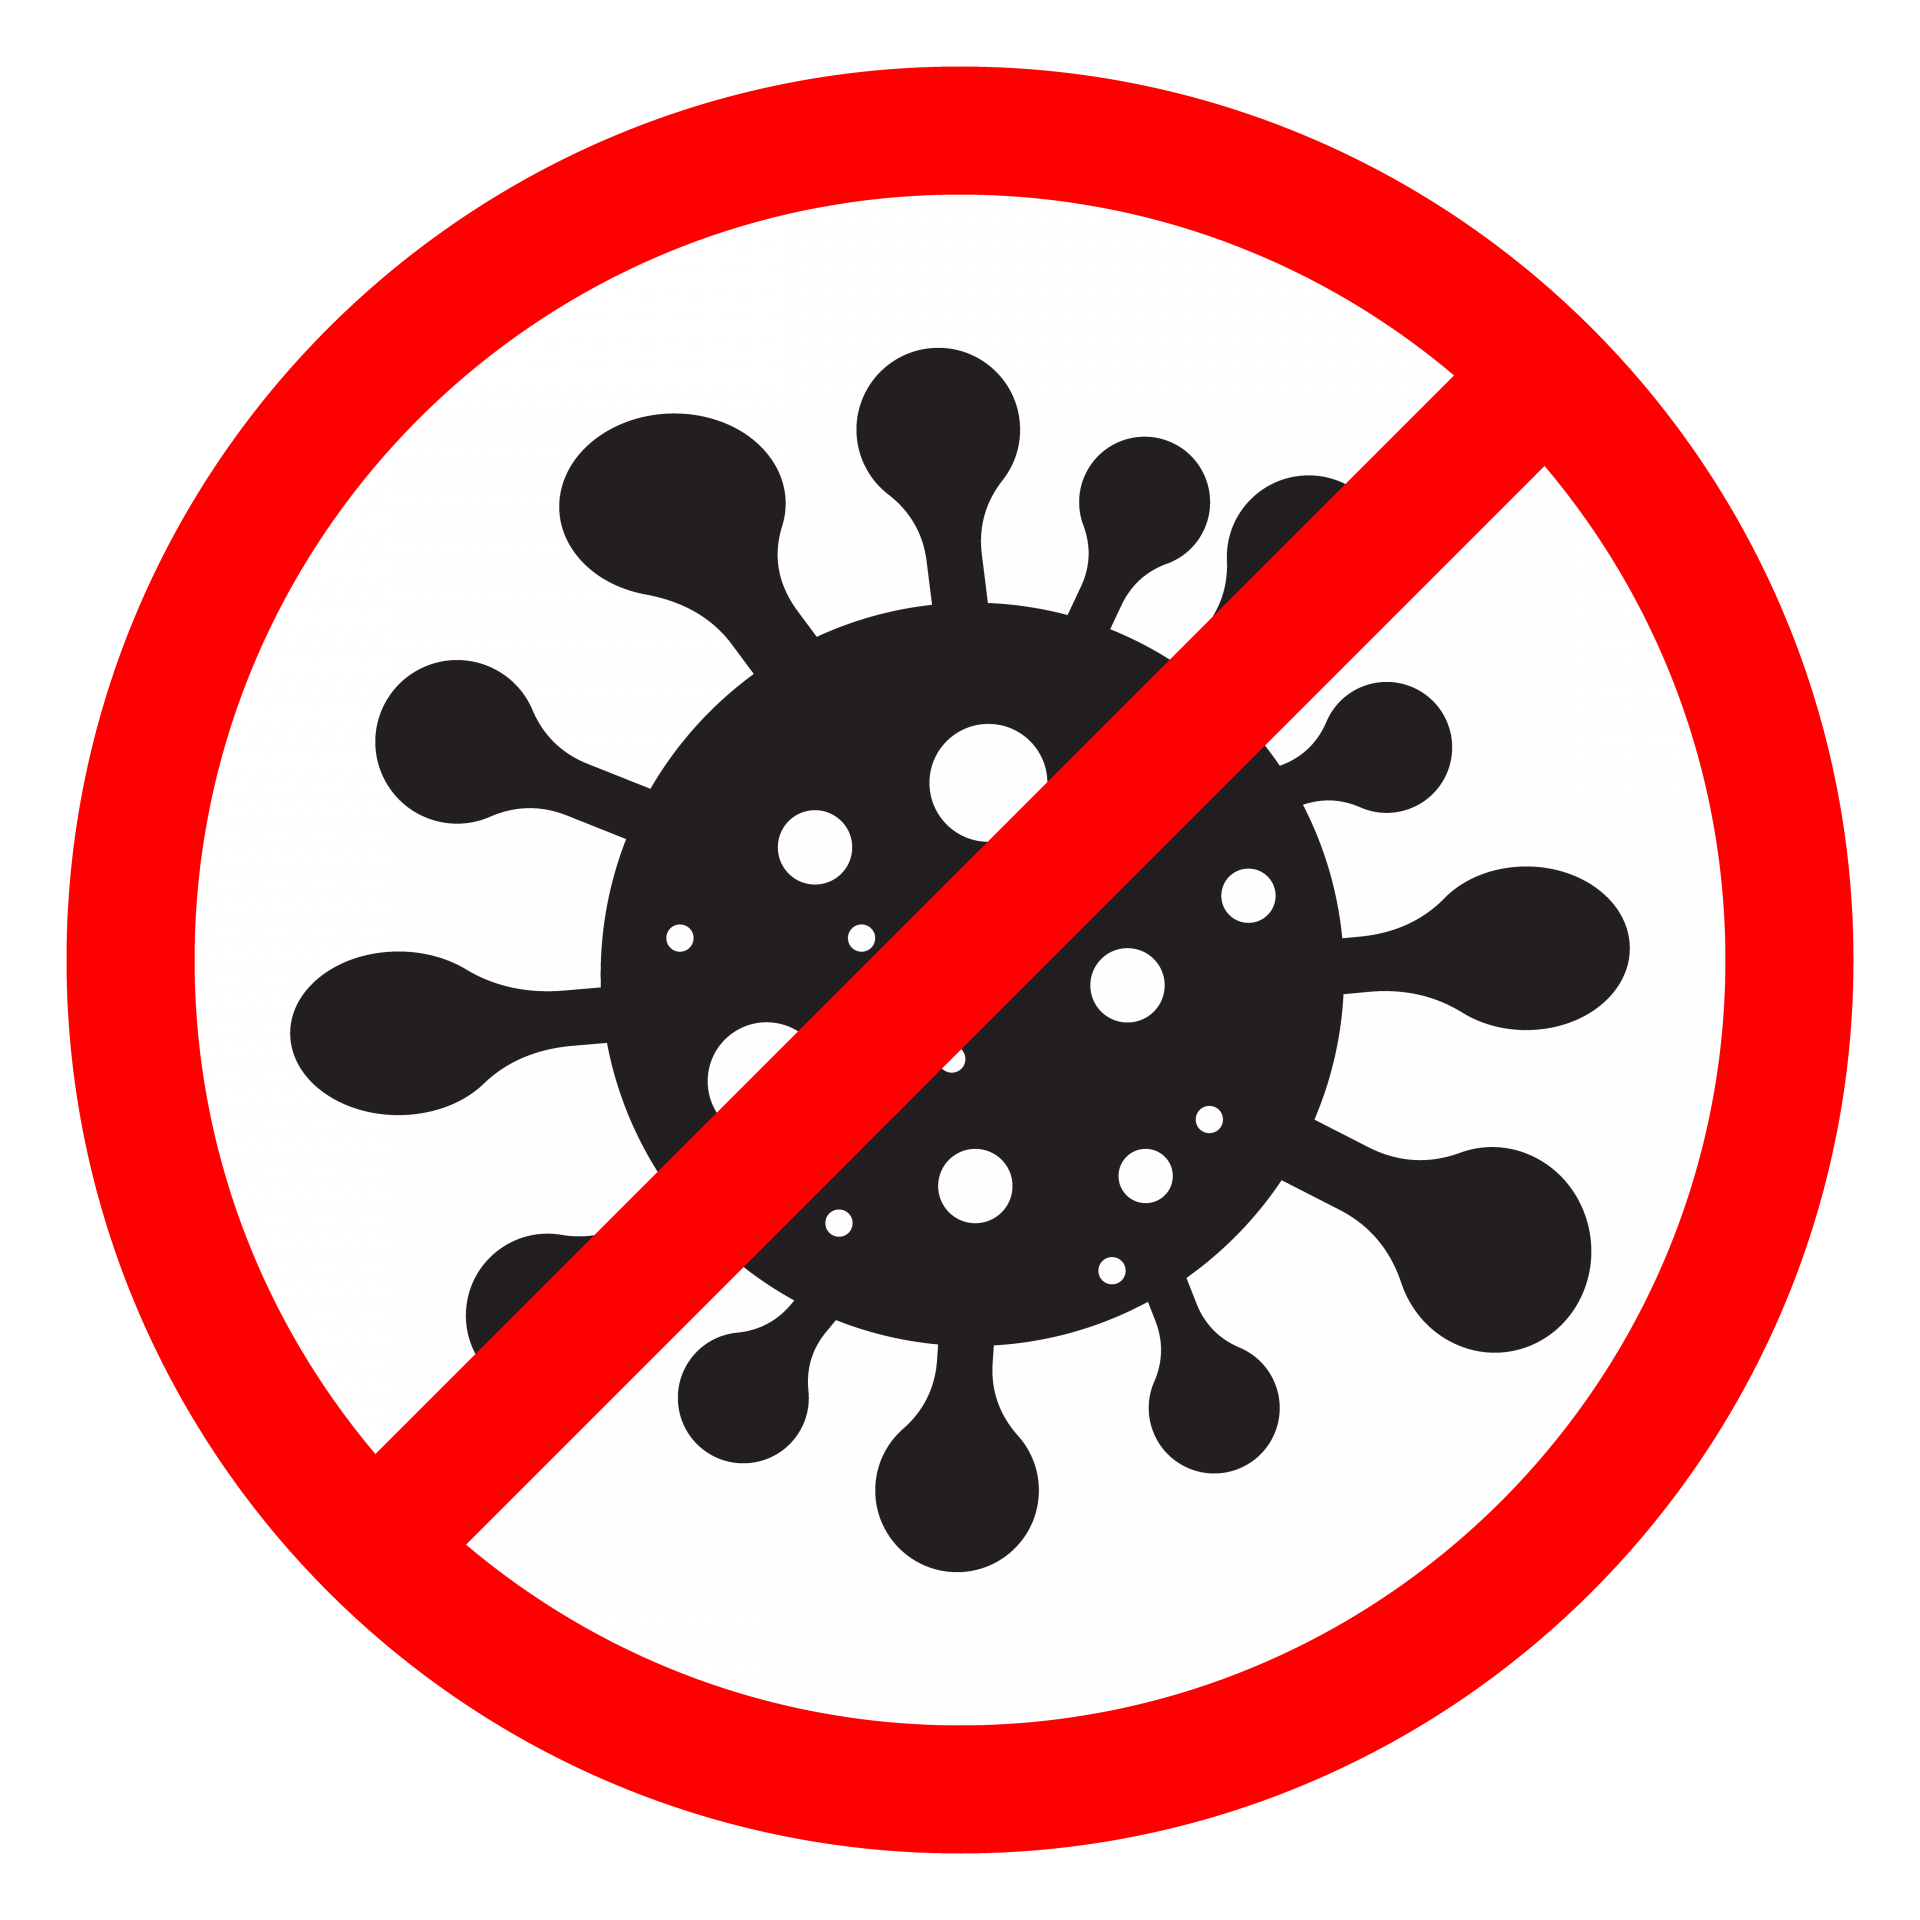 coronavirus pandemic